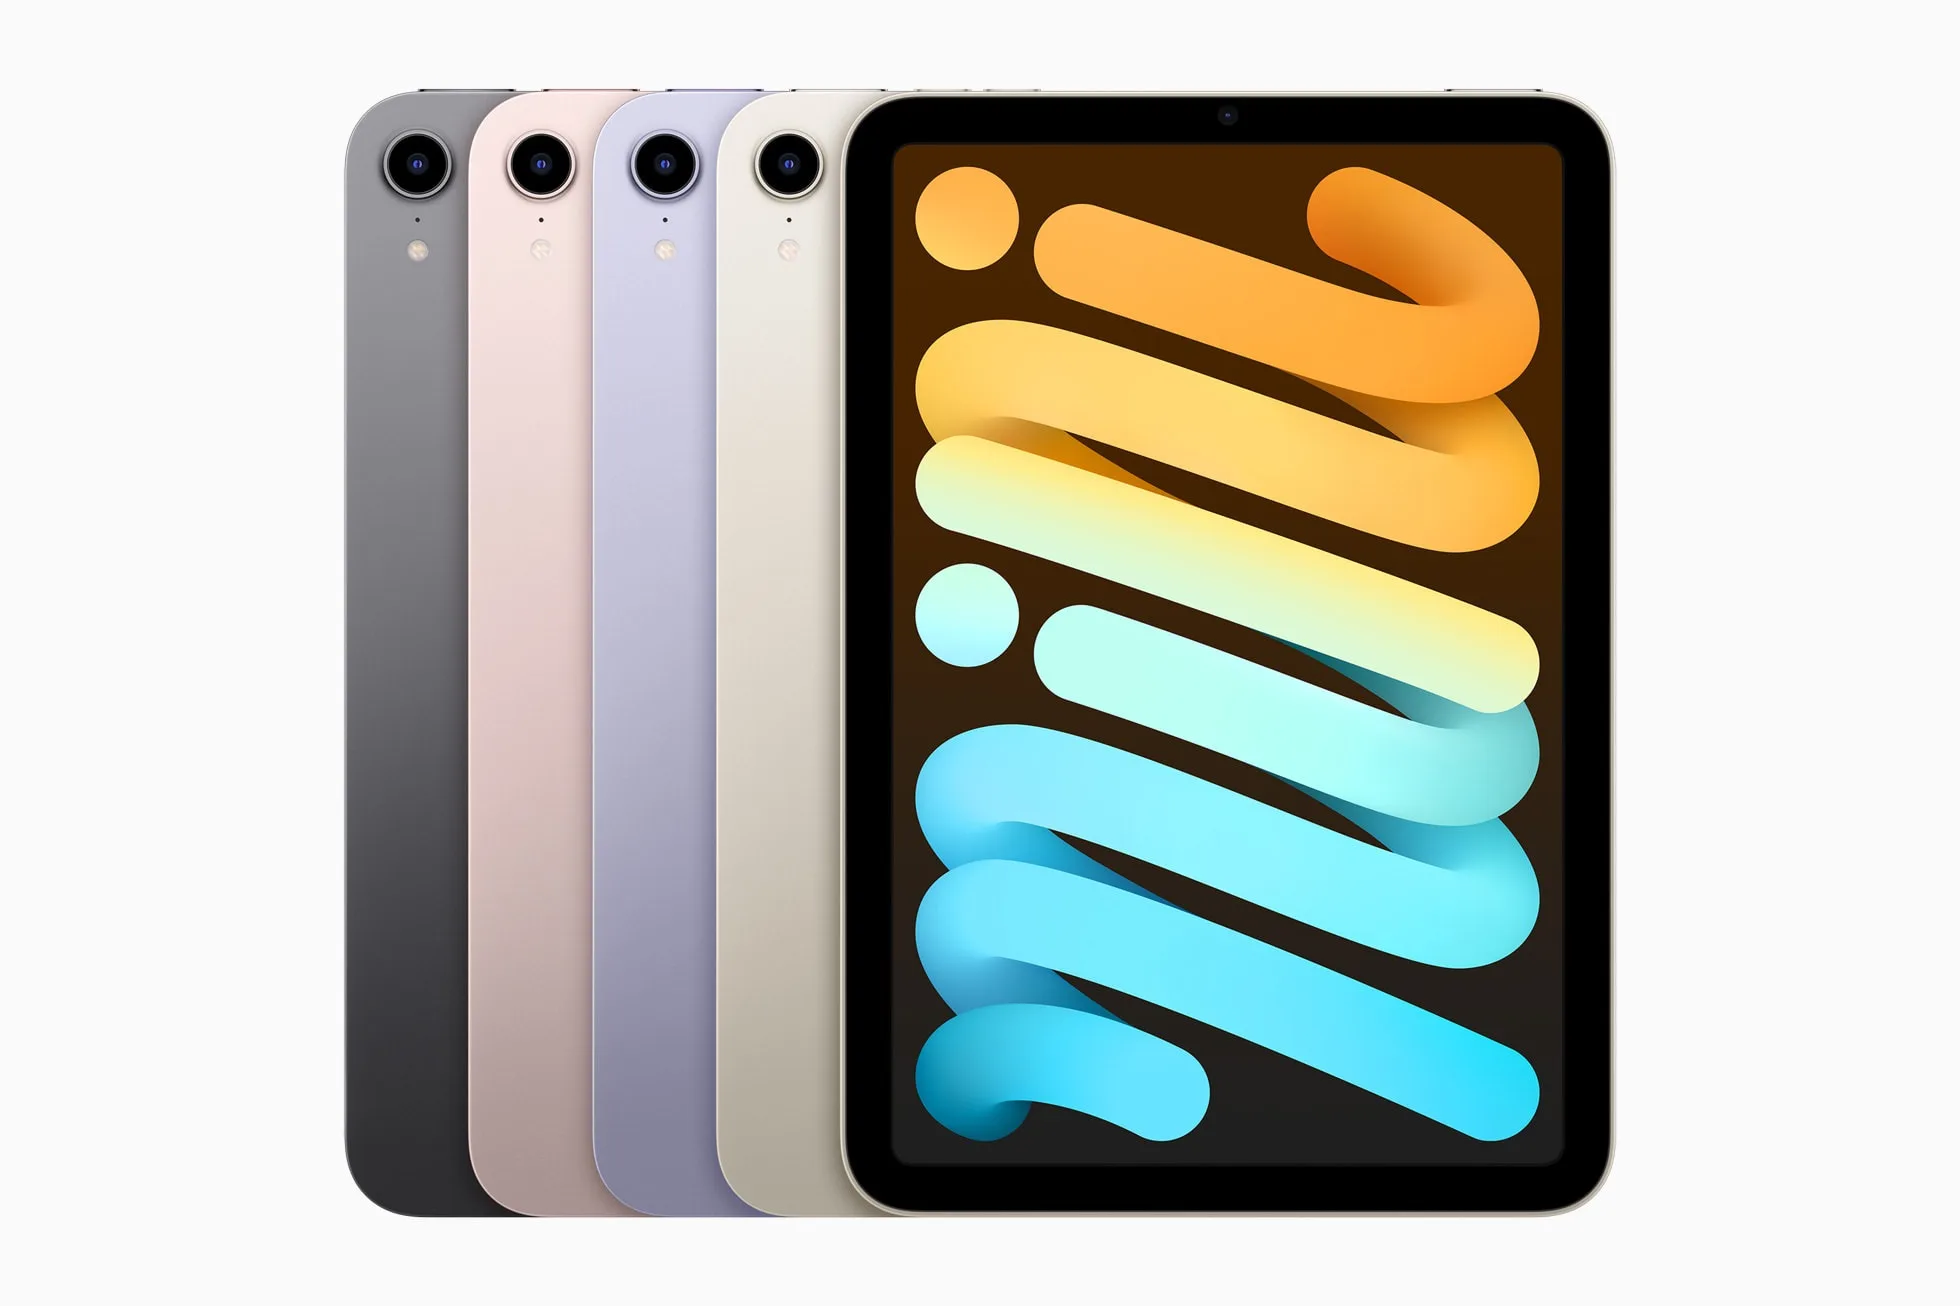 Apple iPad mini colors 09142021 jpg